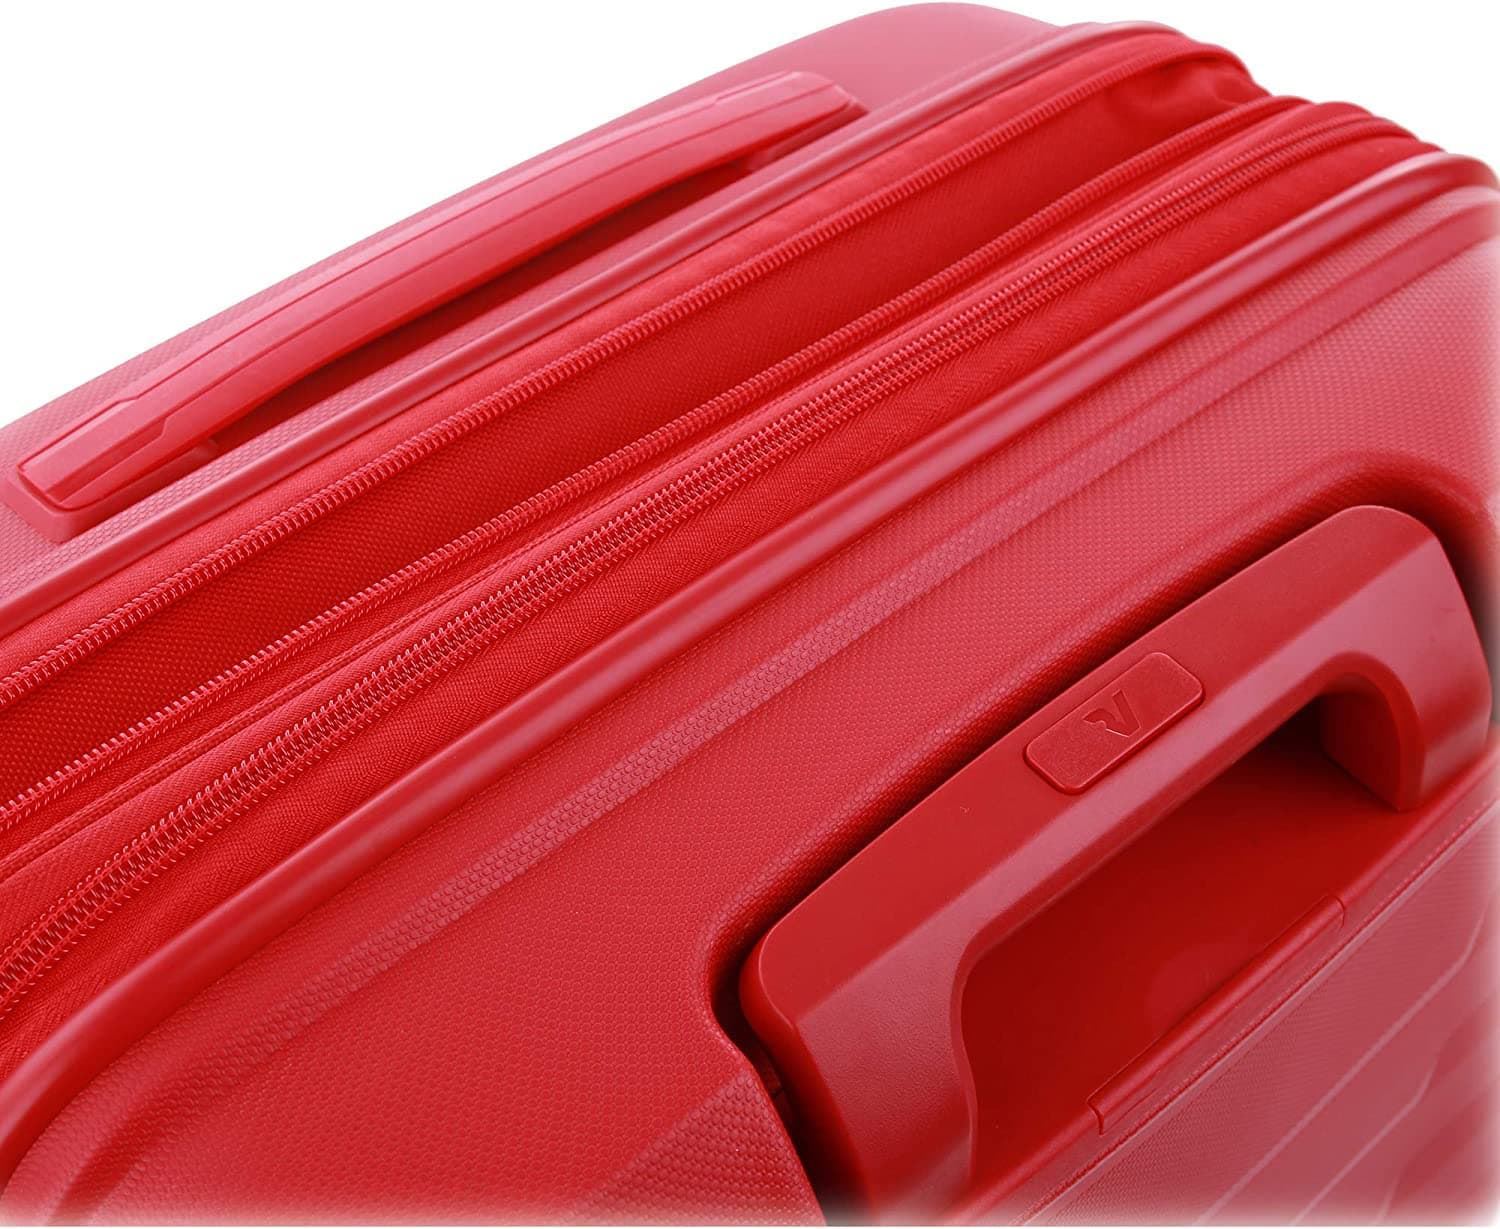 Roncato Maleta Grande Rigida Skyline Expandible color Rojo Garantia 5 años - Imagen 6